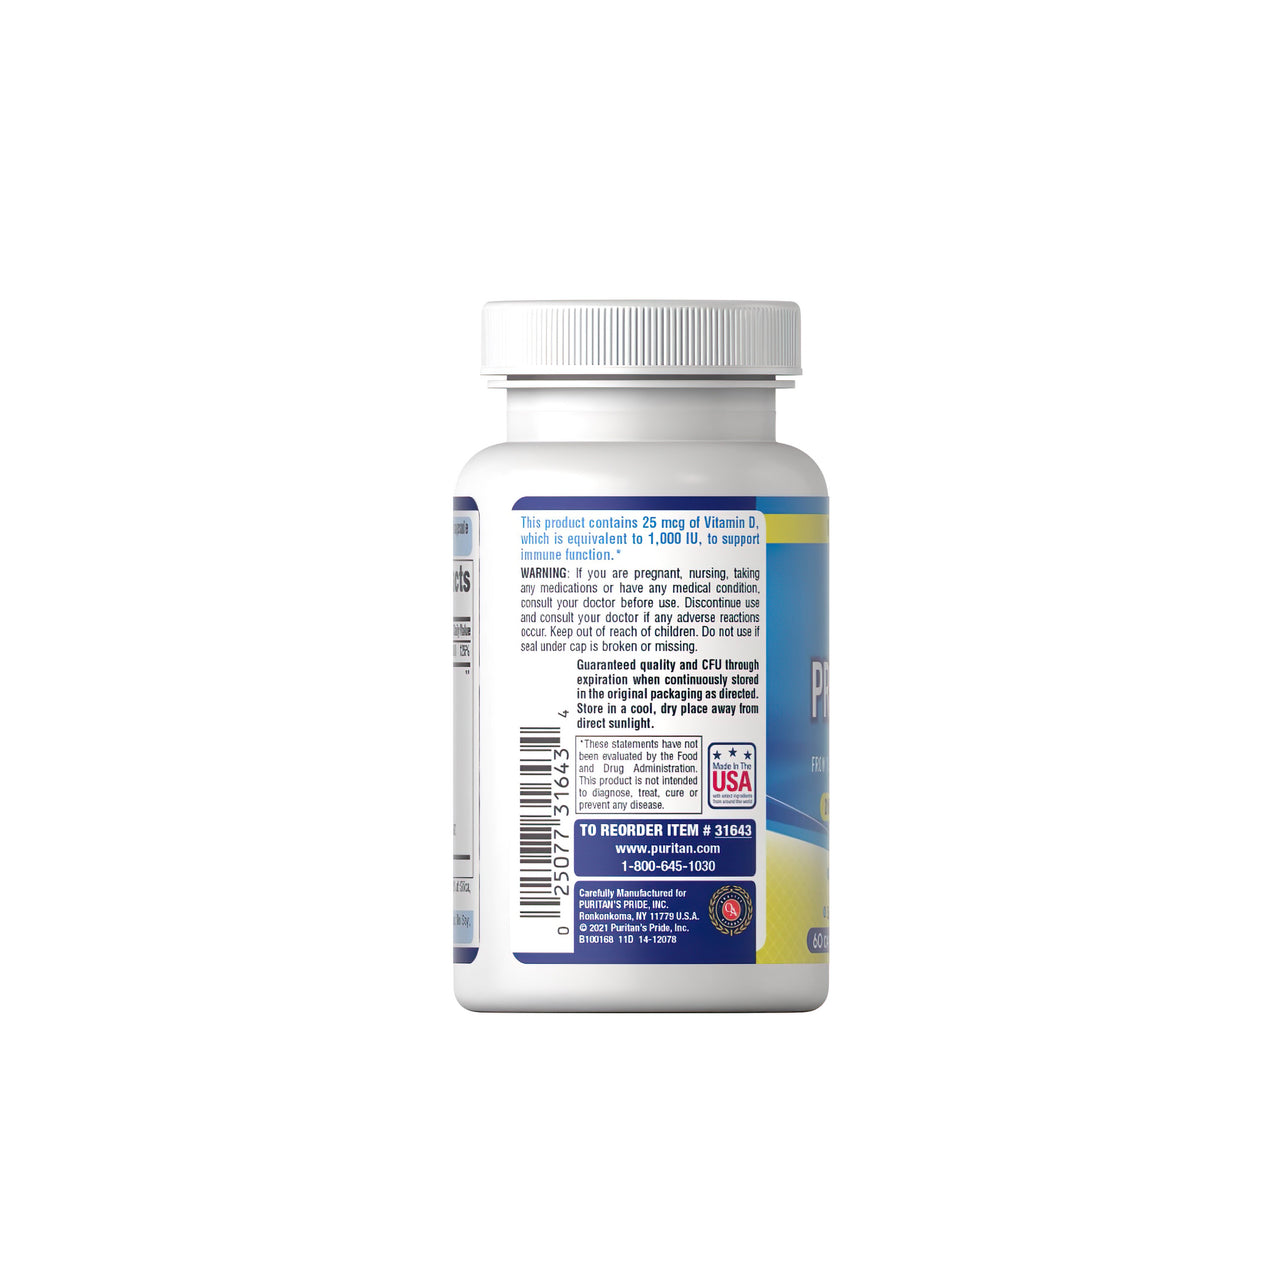 Um frasco de Probiotic 10 Plus Vitamin D3 1000 IU 60 caps, um poderoso reforço imunitário, sobre um fundo branco. (Nome da marca: Puritan's Pride)